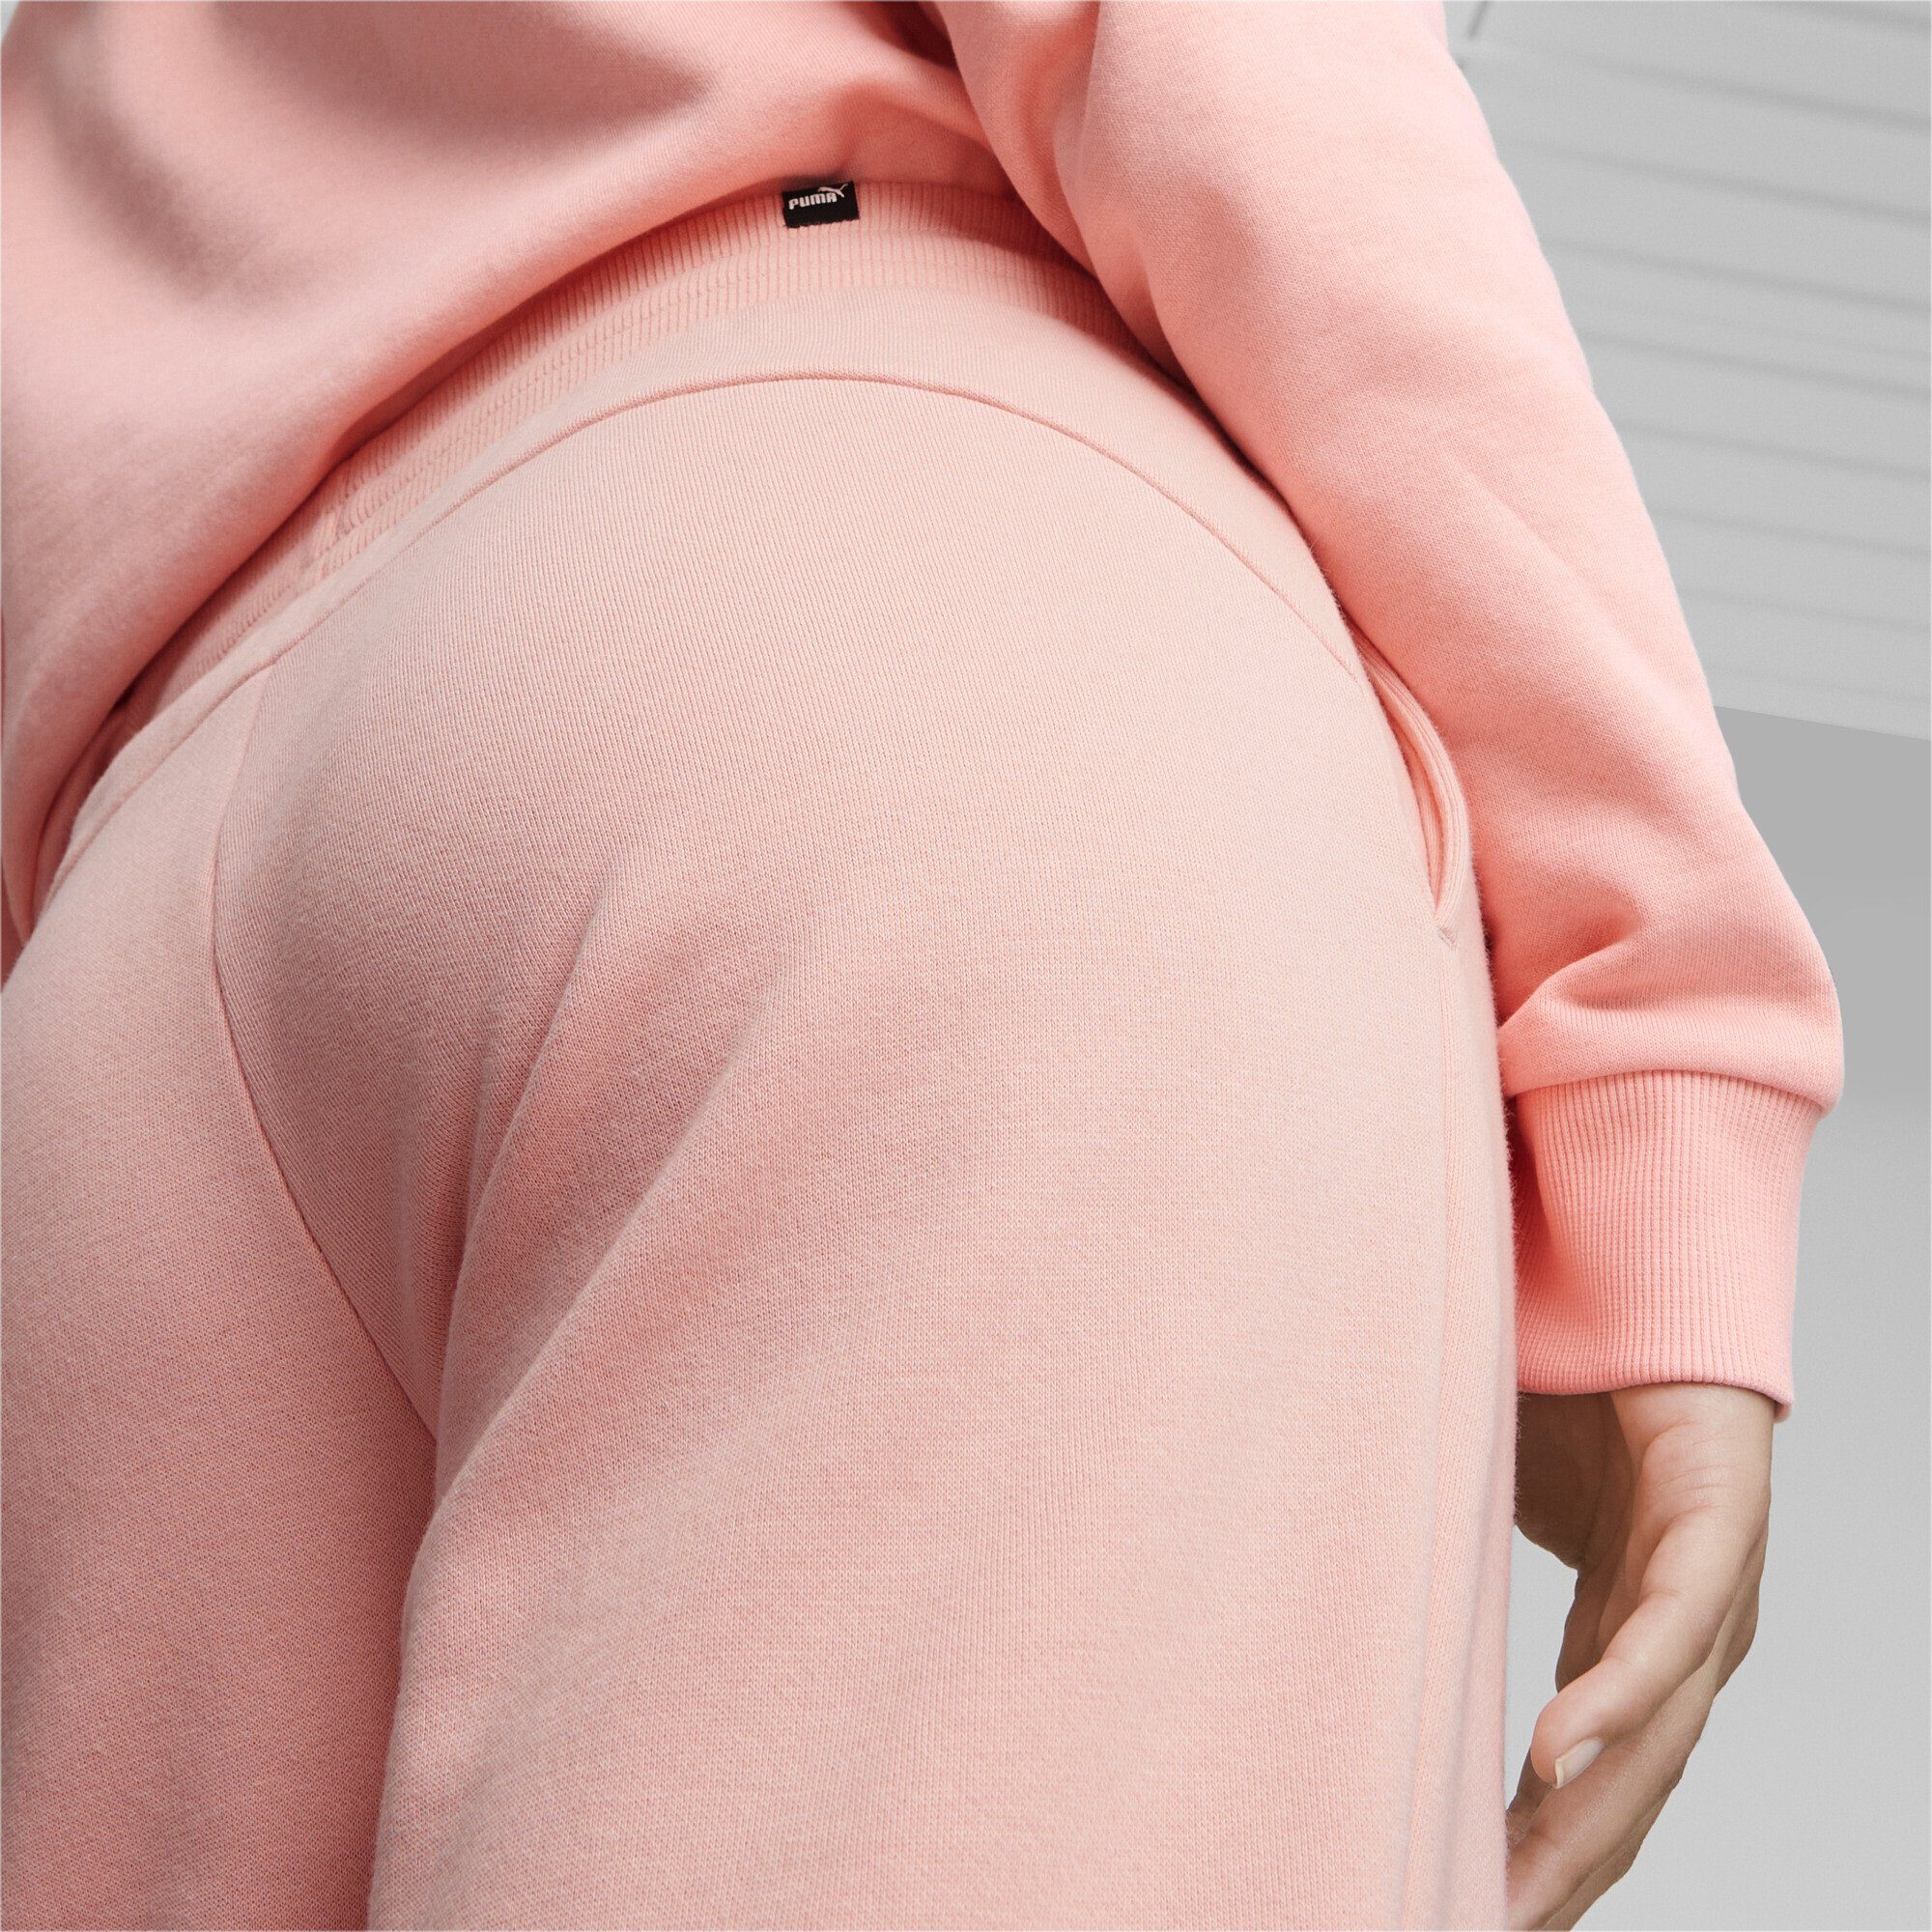 PUMA Sporthose Essentials Smoothie Peach Jogginghose Pink Damen